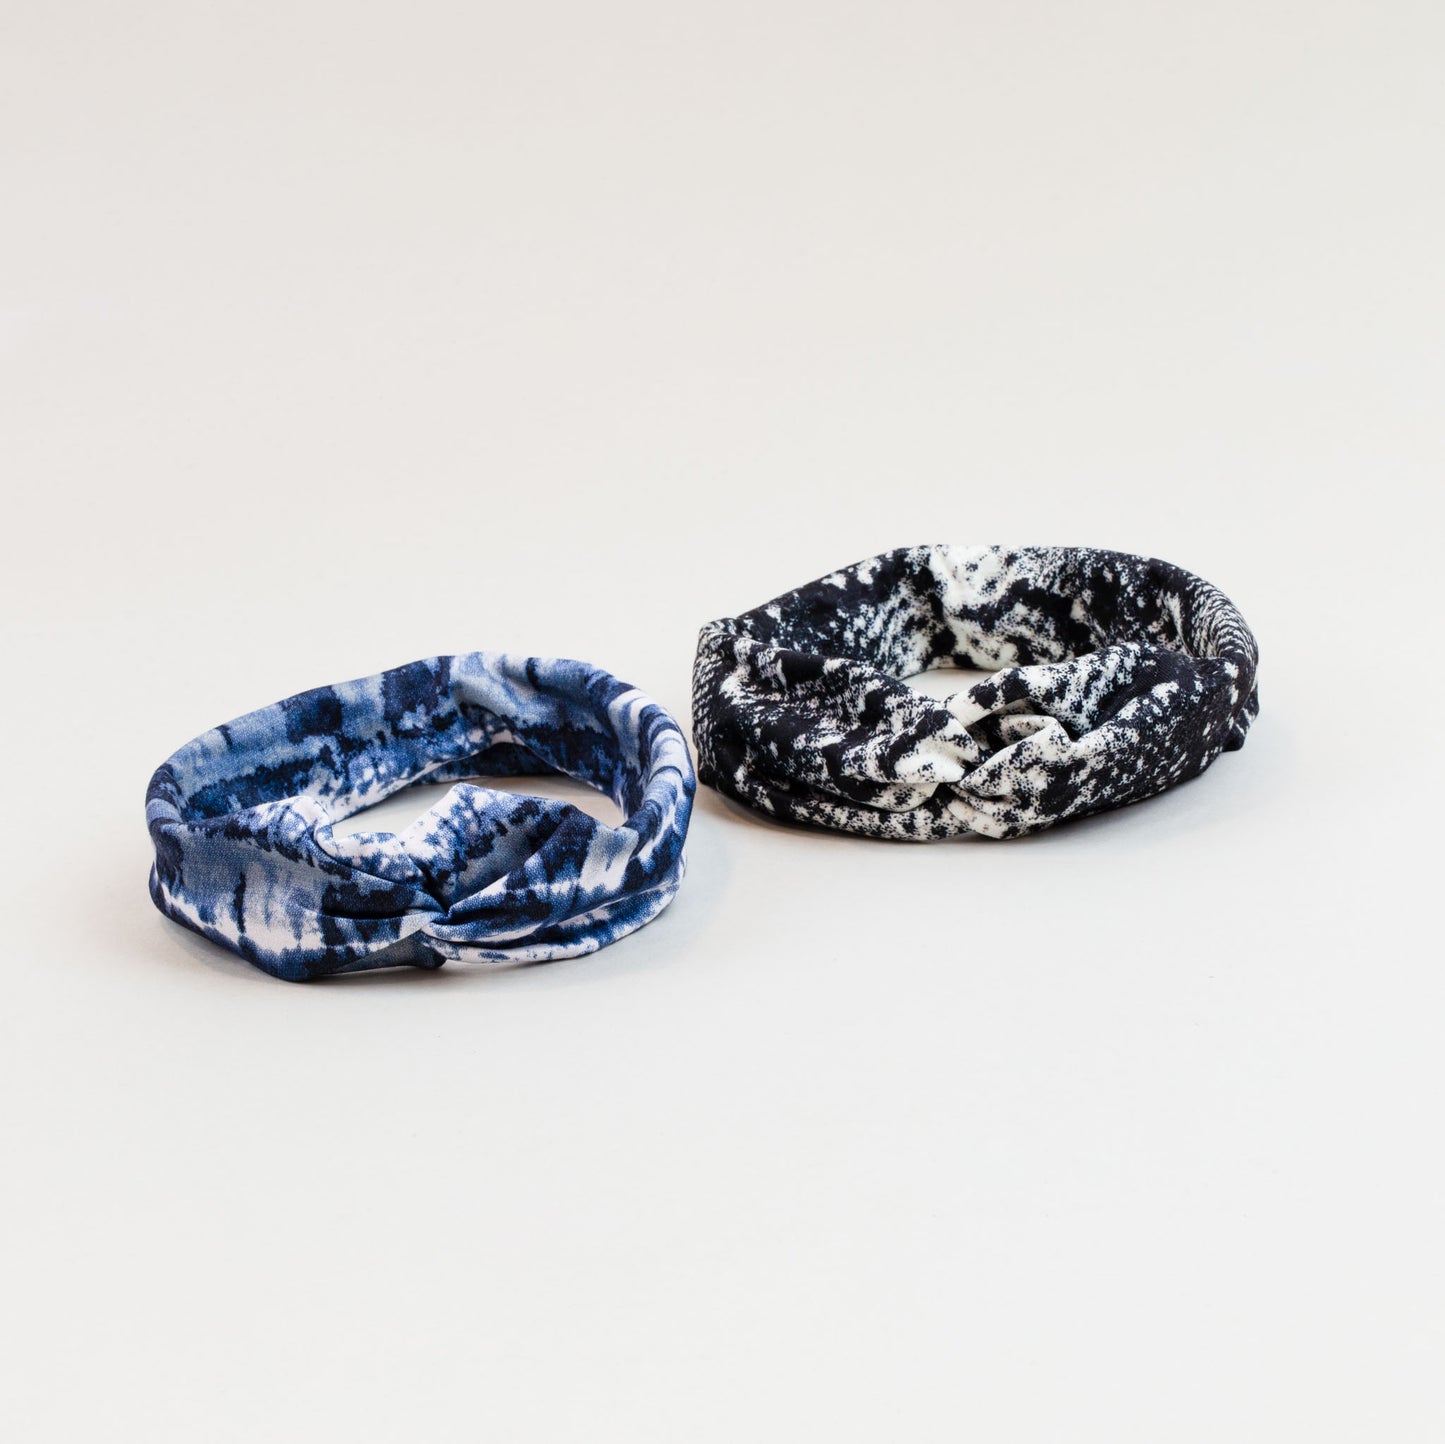 Bentiță de păr cu nod și animal print, set 2 buc - Albastru, Negru